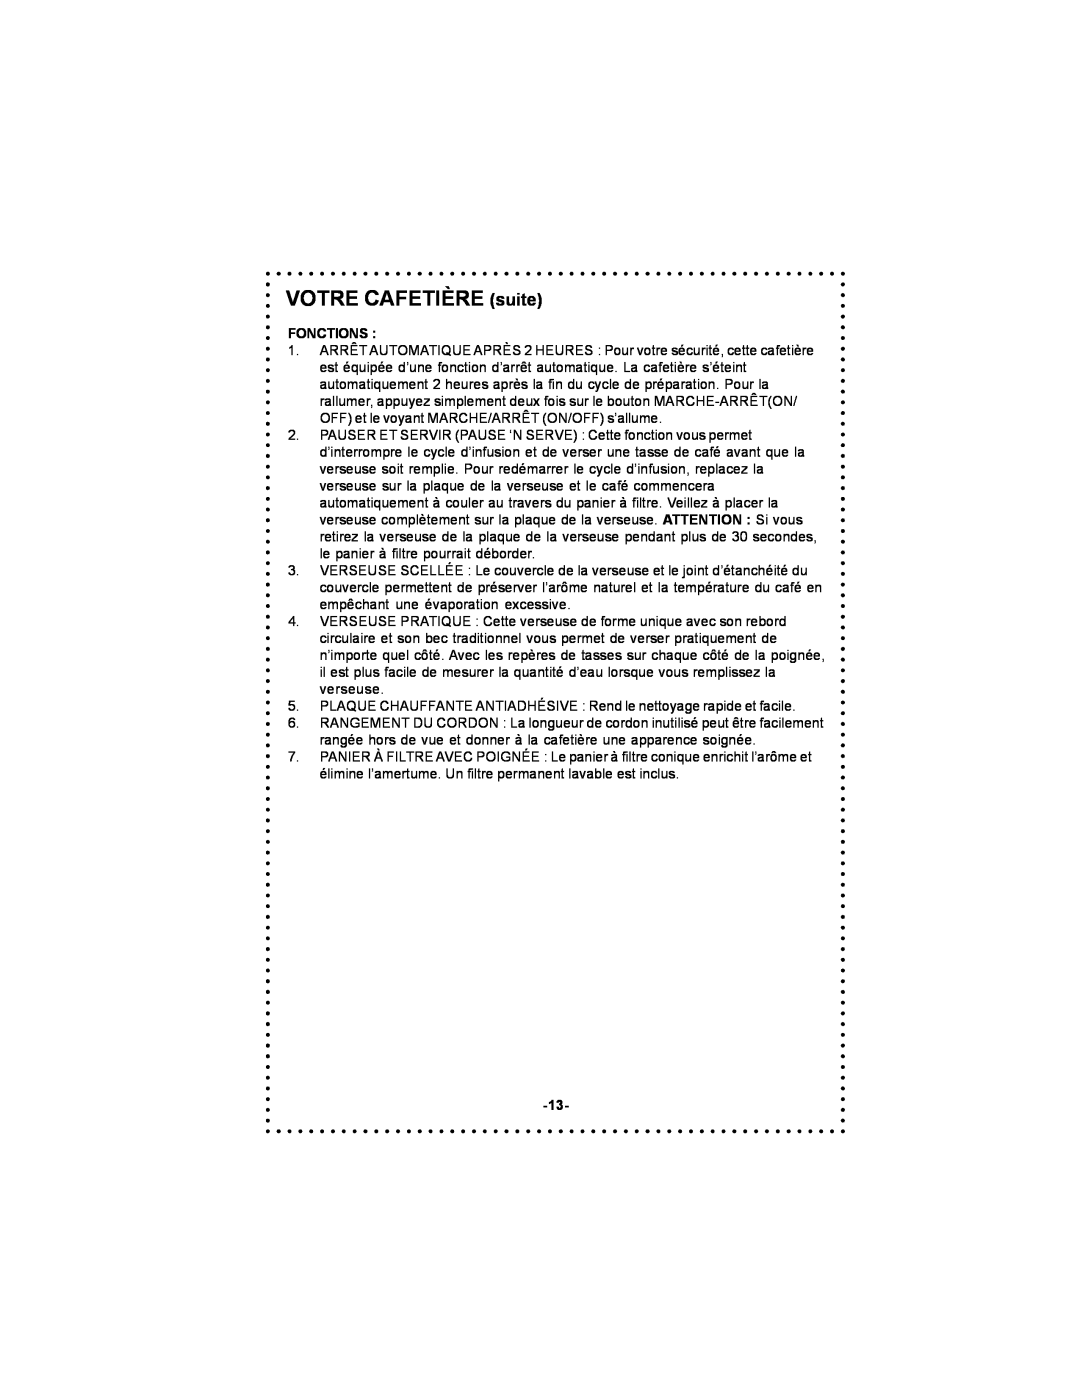 DeLonghi DC500 instruction manual VOTRE CAFETIÈRE suite, Fonctions 